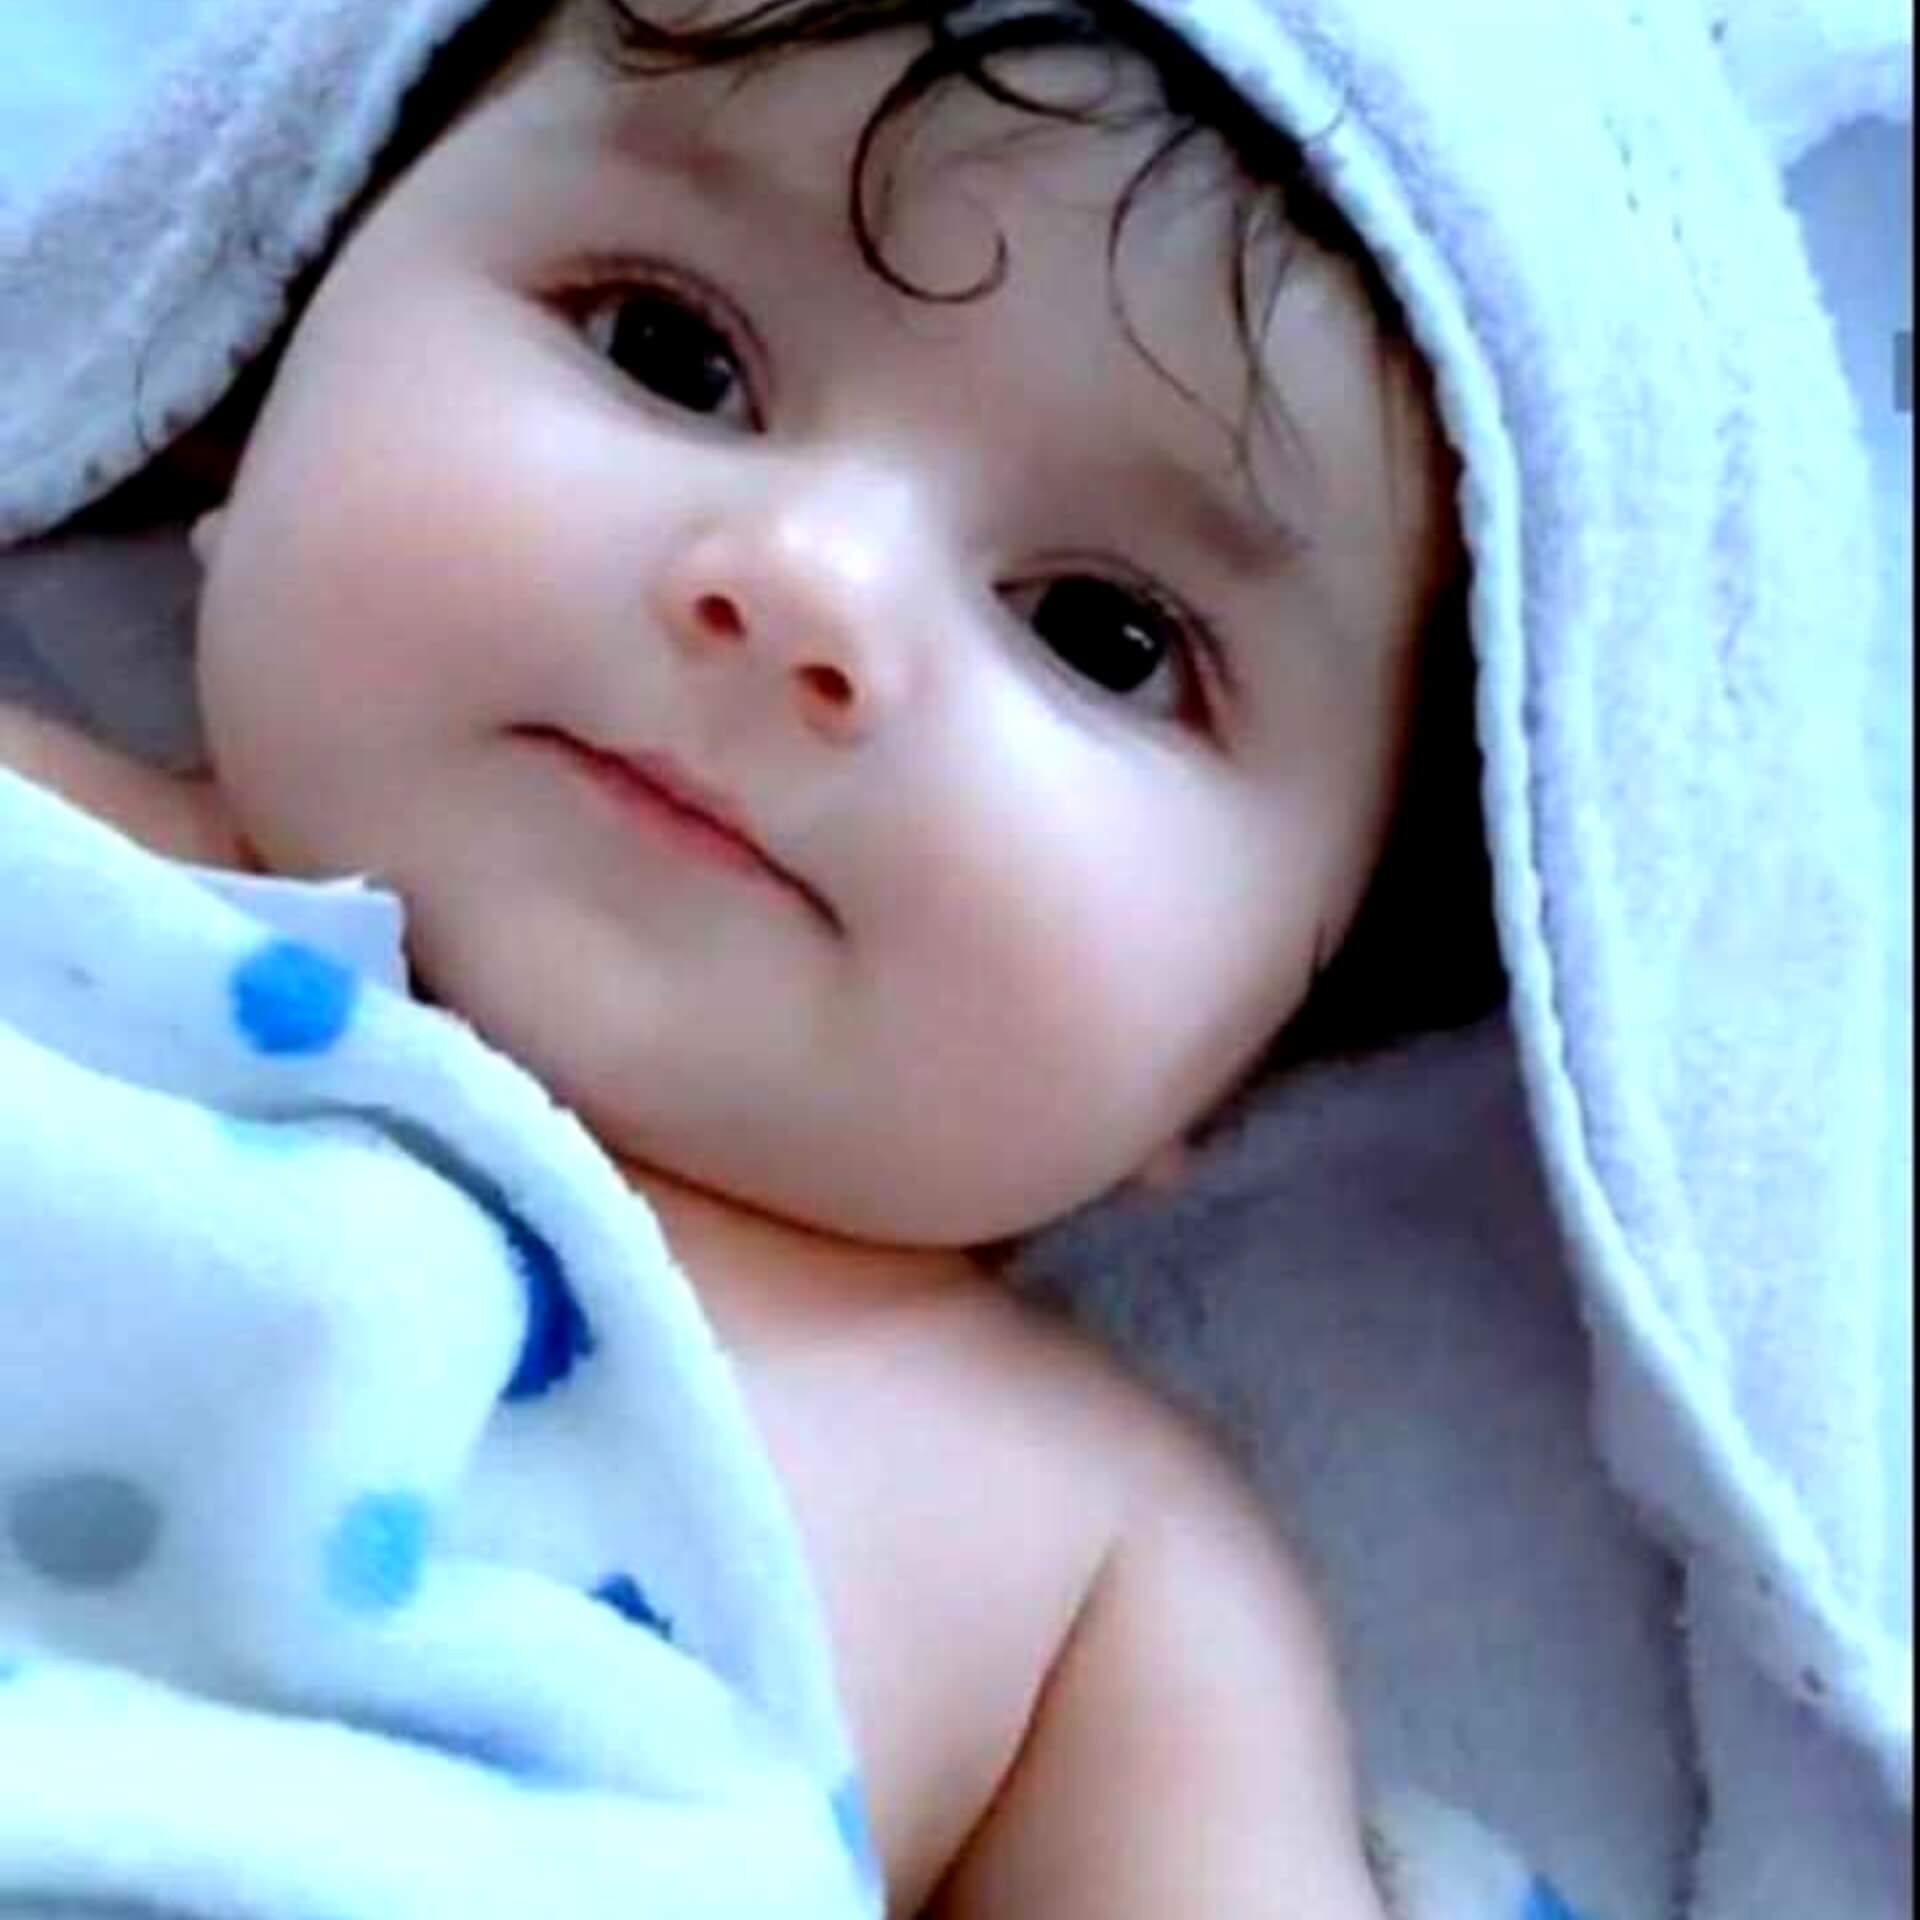 Cute Baby dp Photo for Whatsapp Facebook